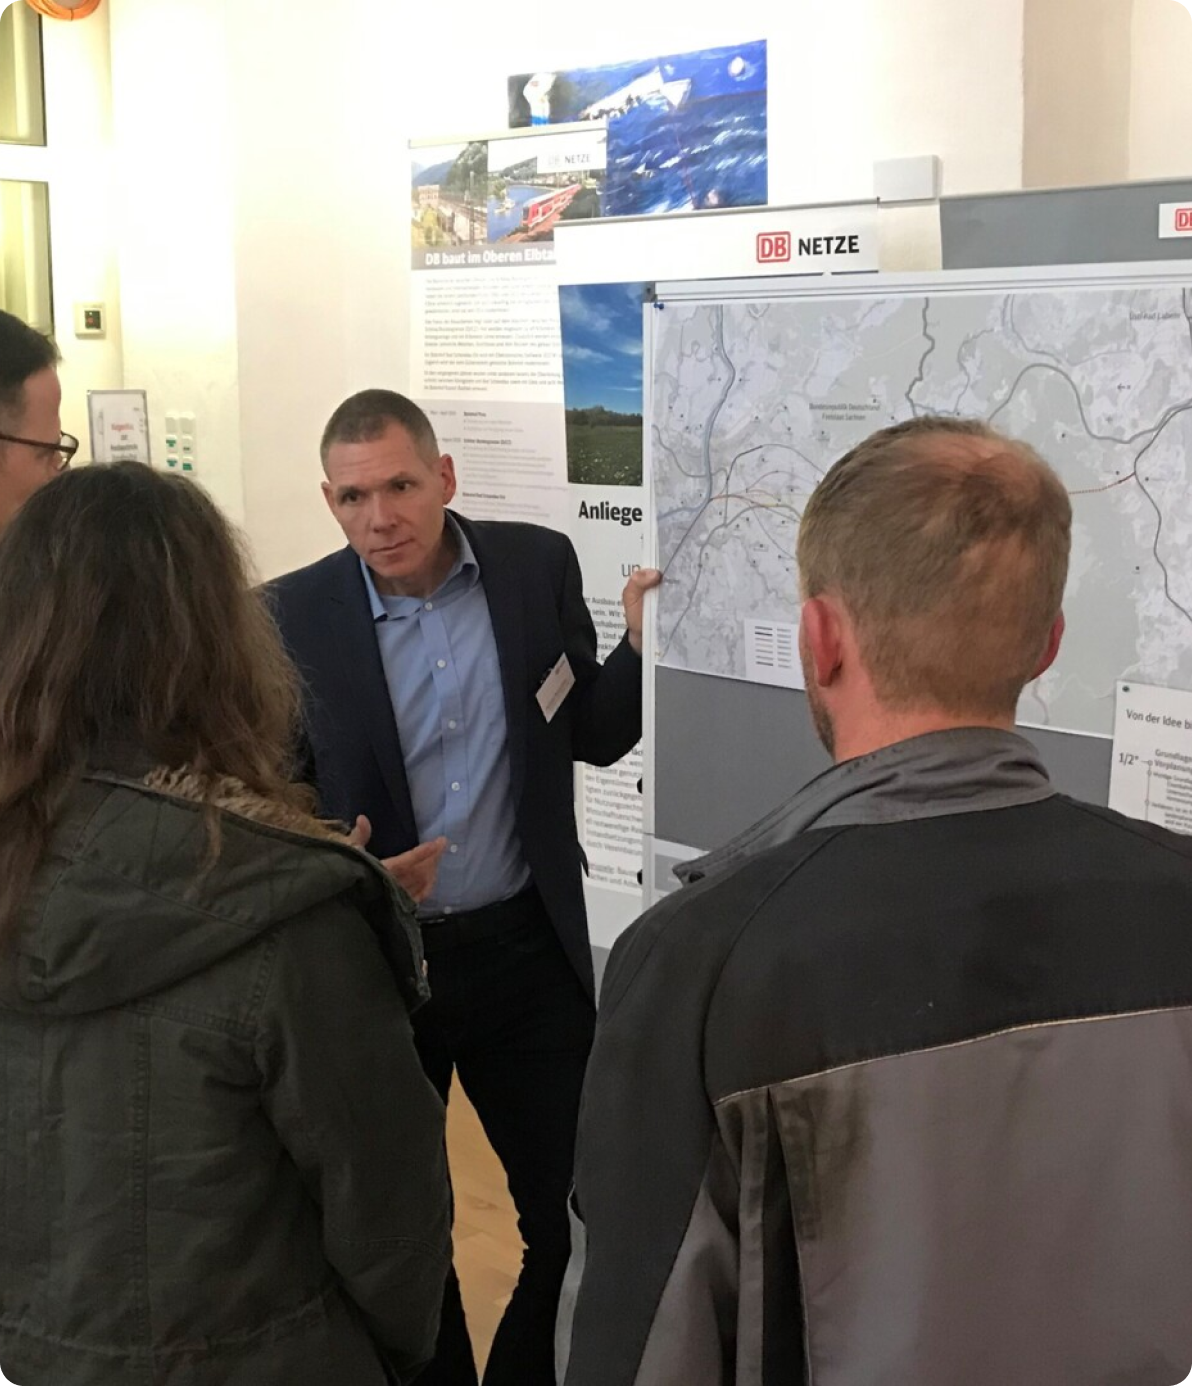 Michael Menschner, Teilprojektleiter des Abschnitts Dresden - Heidenau, steht am Whiteboard mit einer Karte des Projektgebiets. Er steht drei Personen gegenüber, die auf ihn und die Karte schauen.